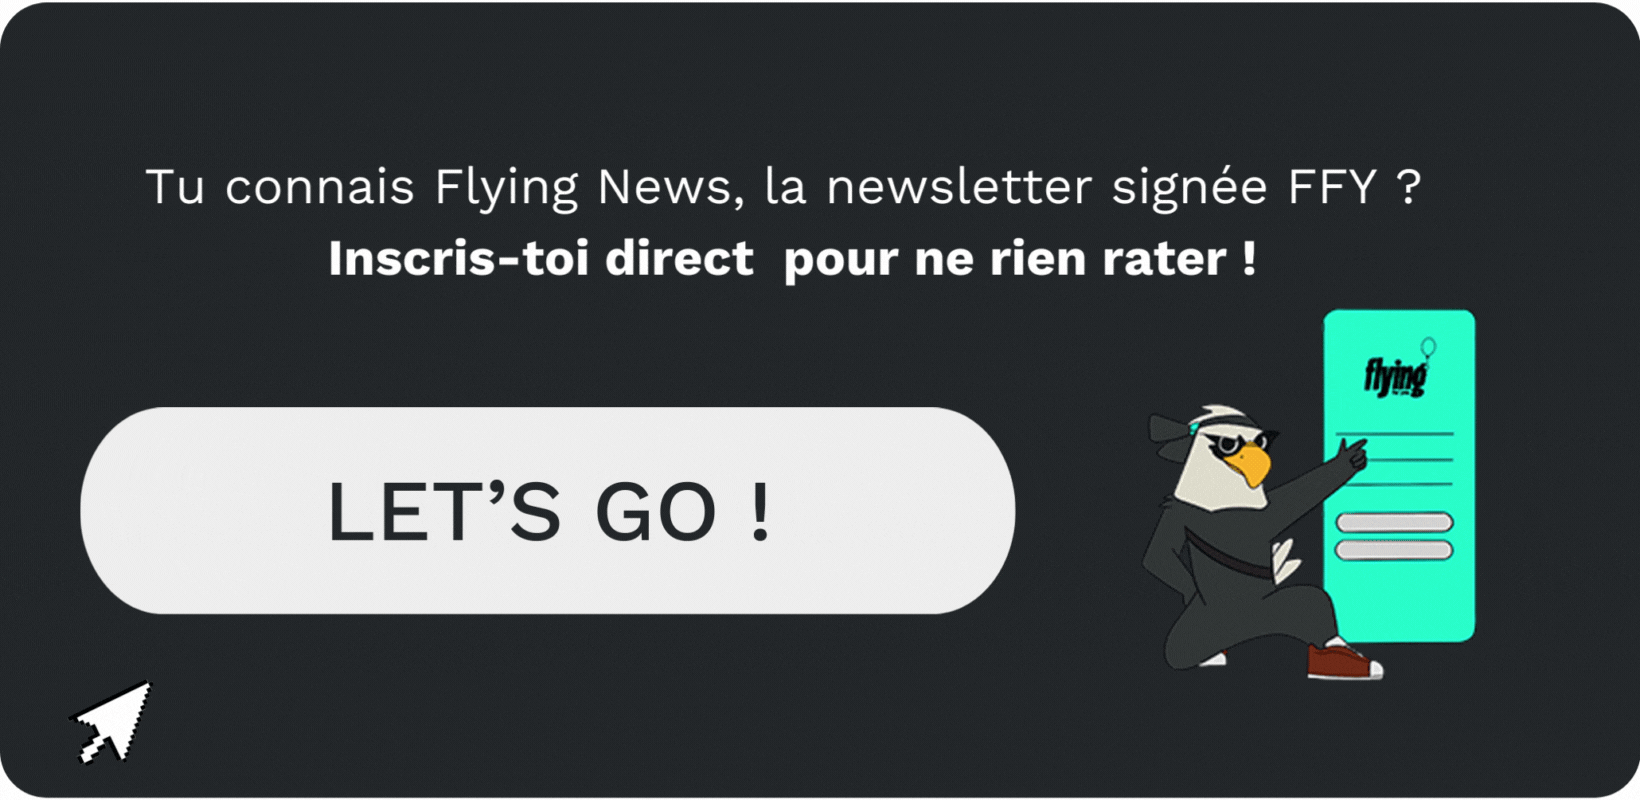 flying-news-newsletter-ffy-inscription